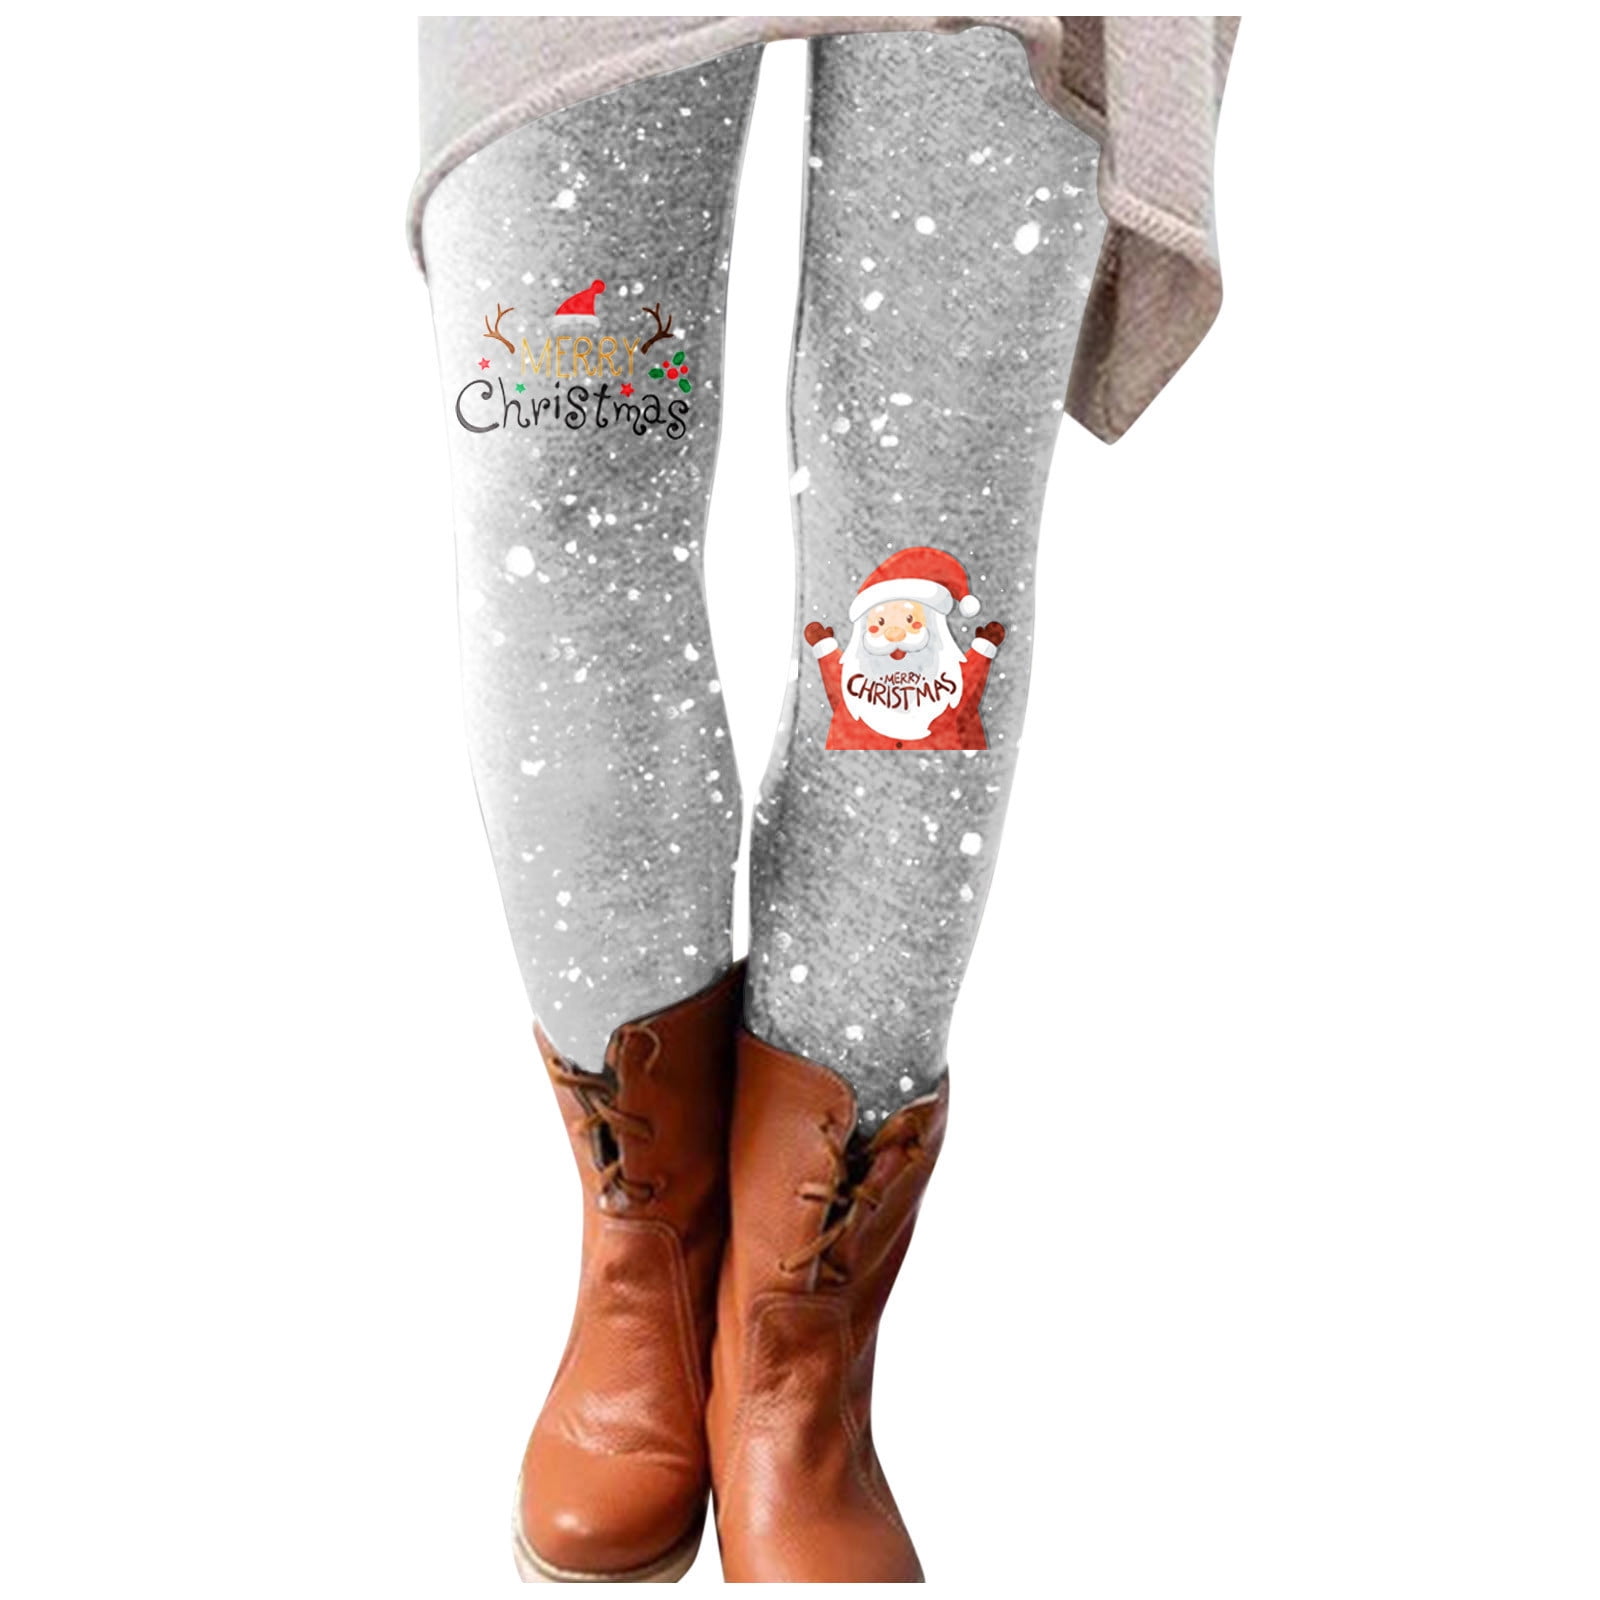 AnuirheiH Women's Christmas Leggings Xmas Print Pants High Elastic ...